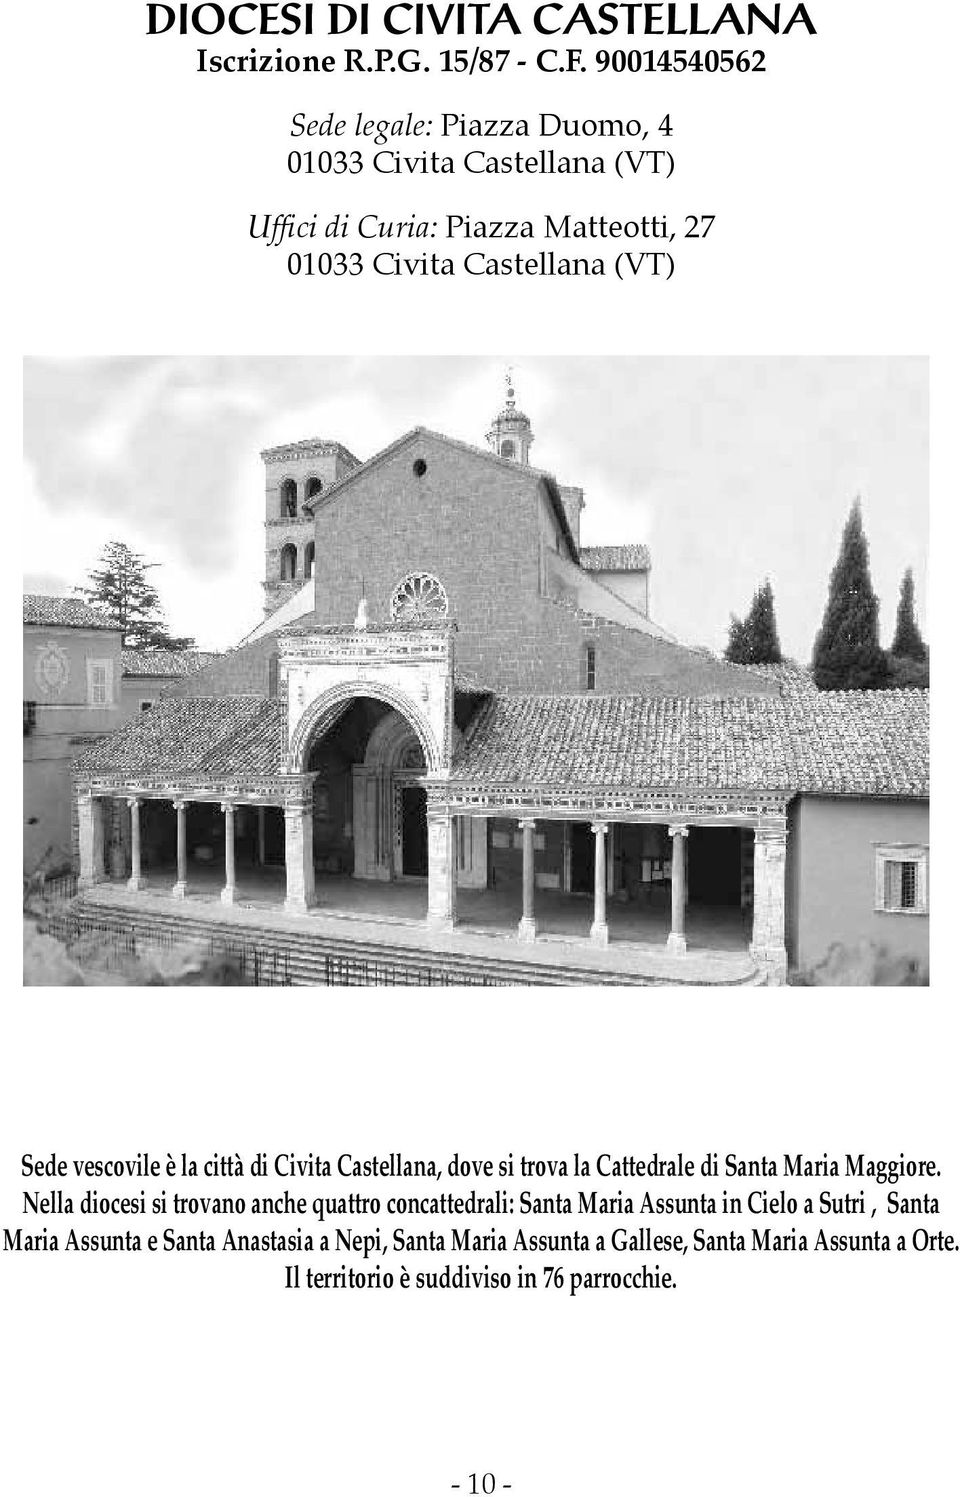 Sede vescovile è la città di Civita Castellana, dove si trova la Cattedrale di Santa Maria Maggiore.